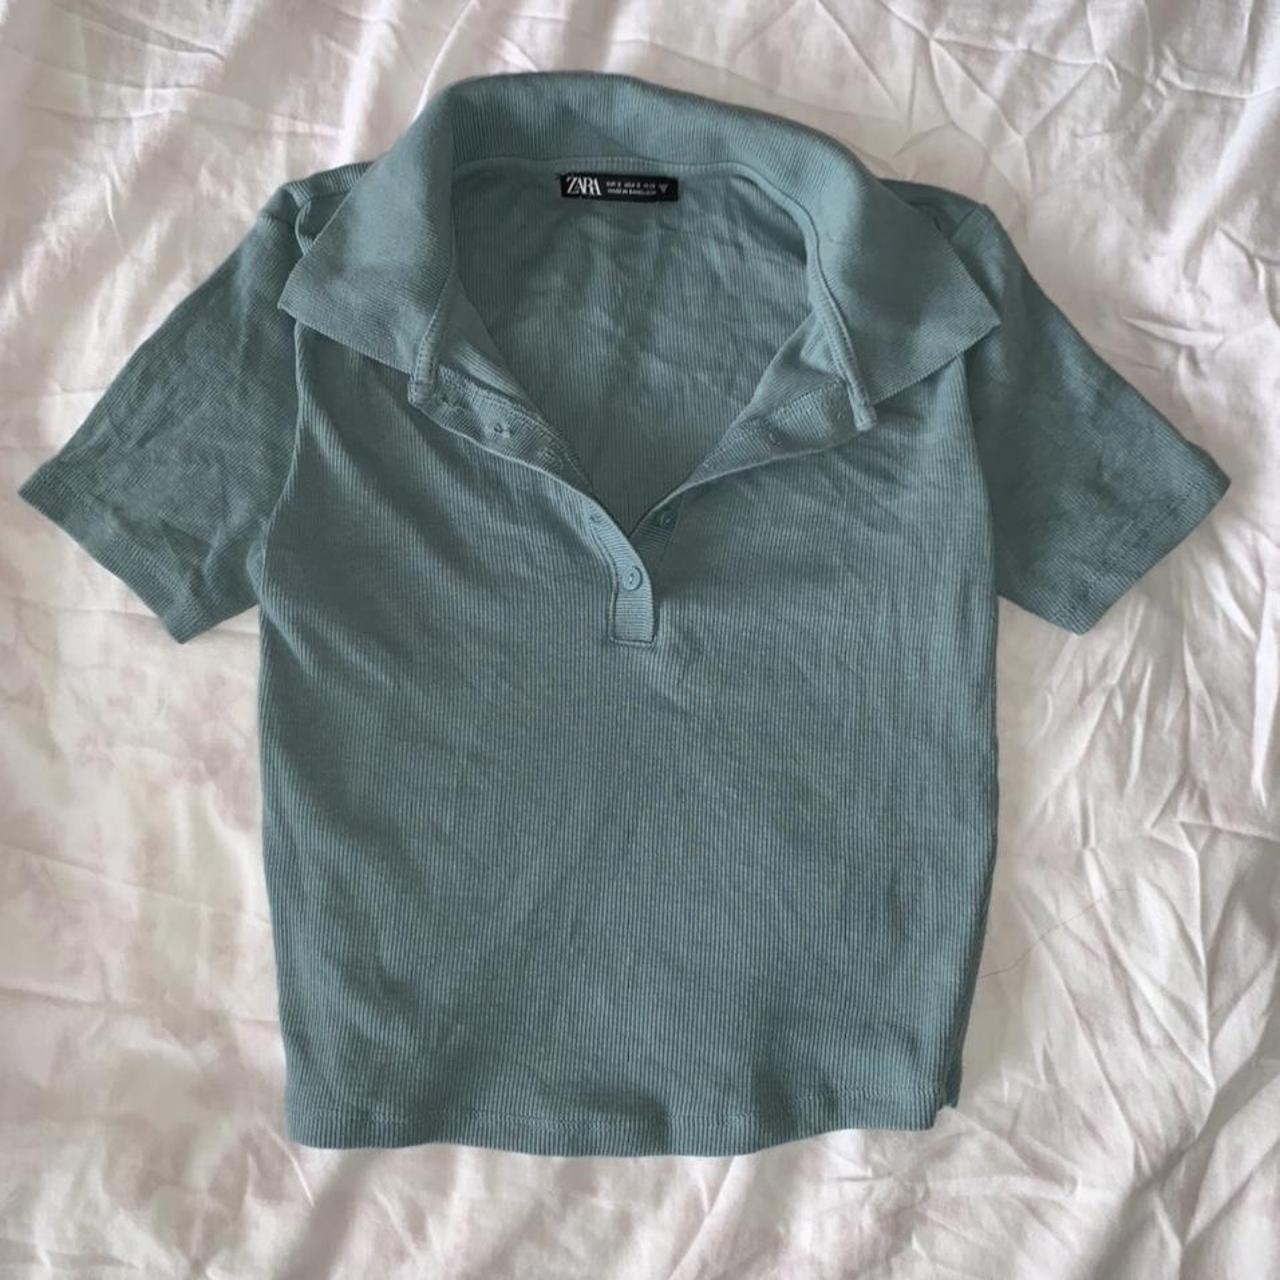 Zara polo shirt in a stretchy Material. Very pretty... - Depop